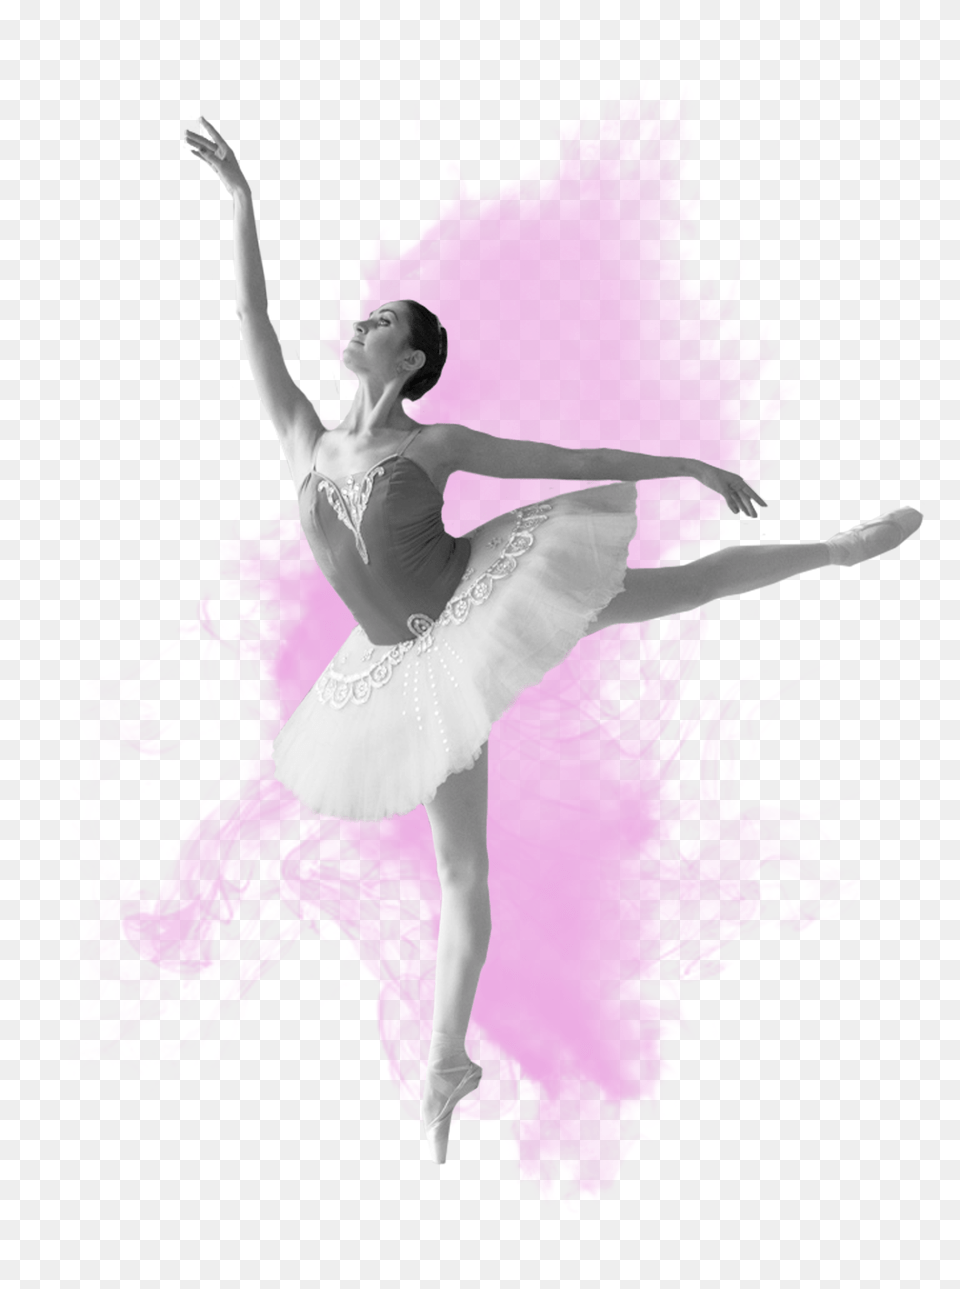 Ballet Dancer, Ballerina, Person, Dancing, Leisure Activities Png Image